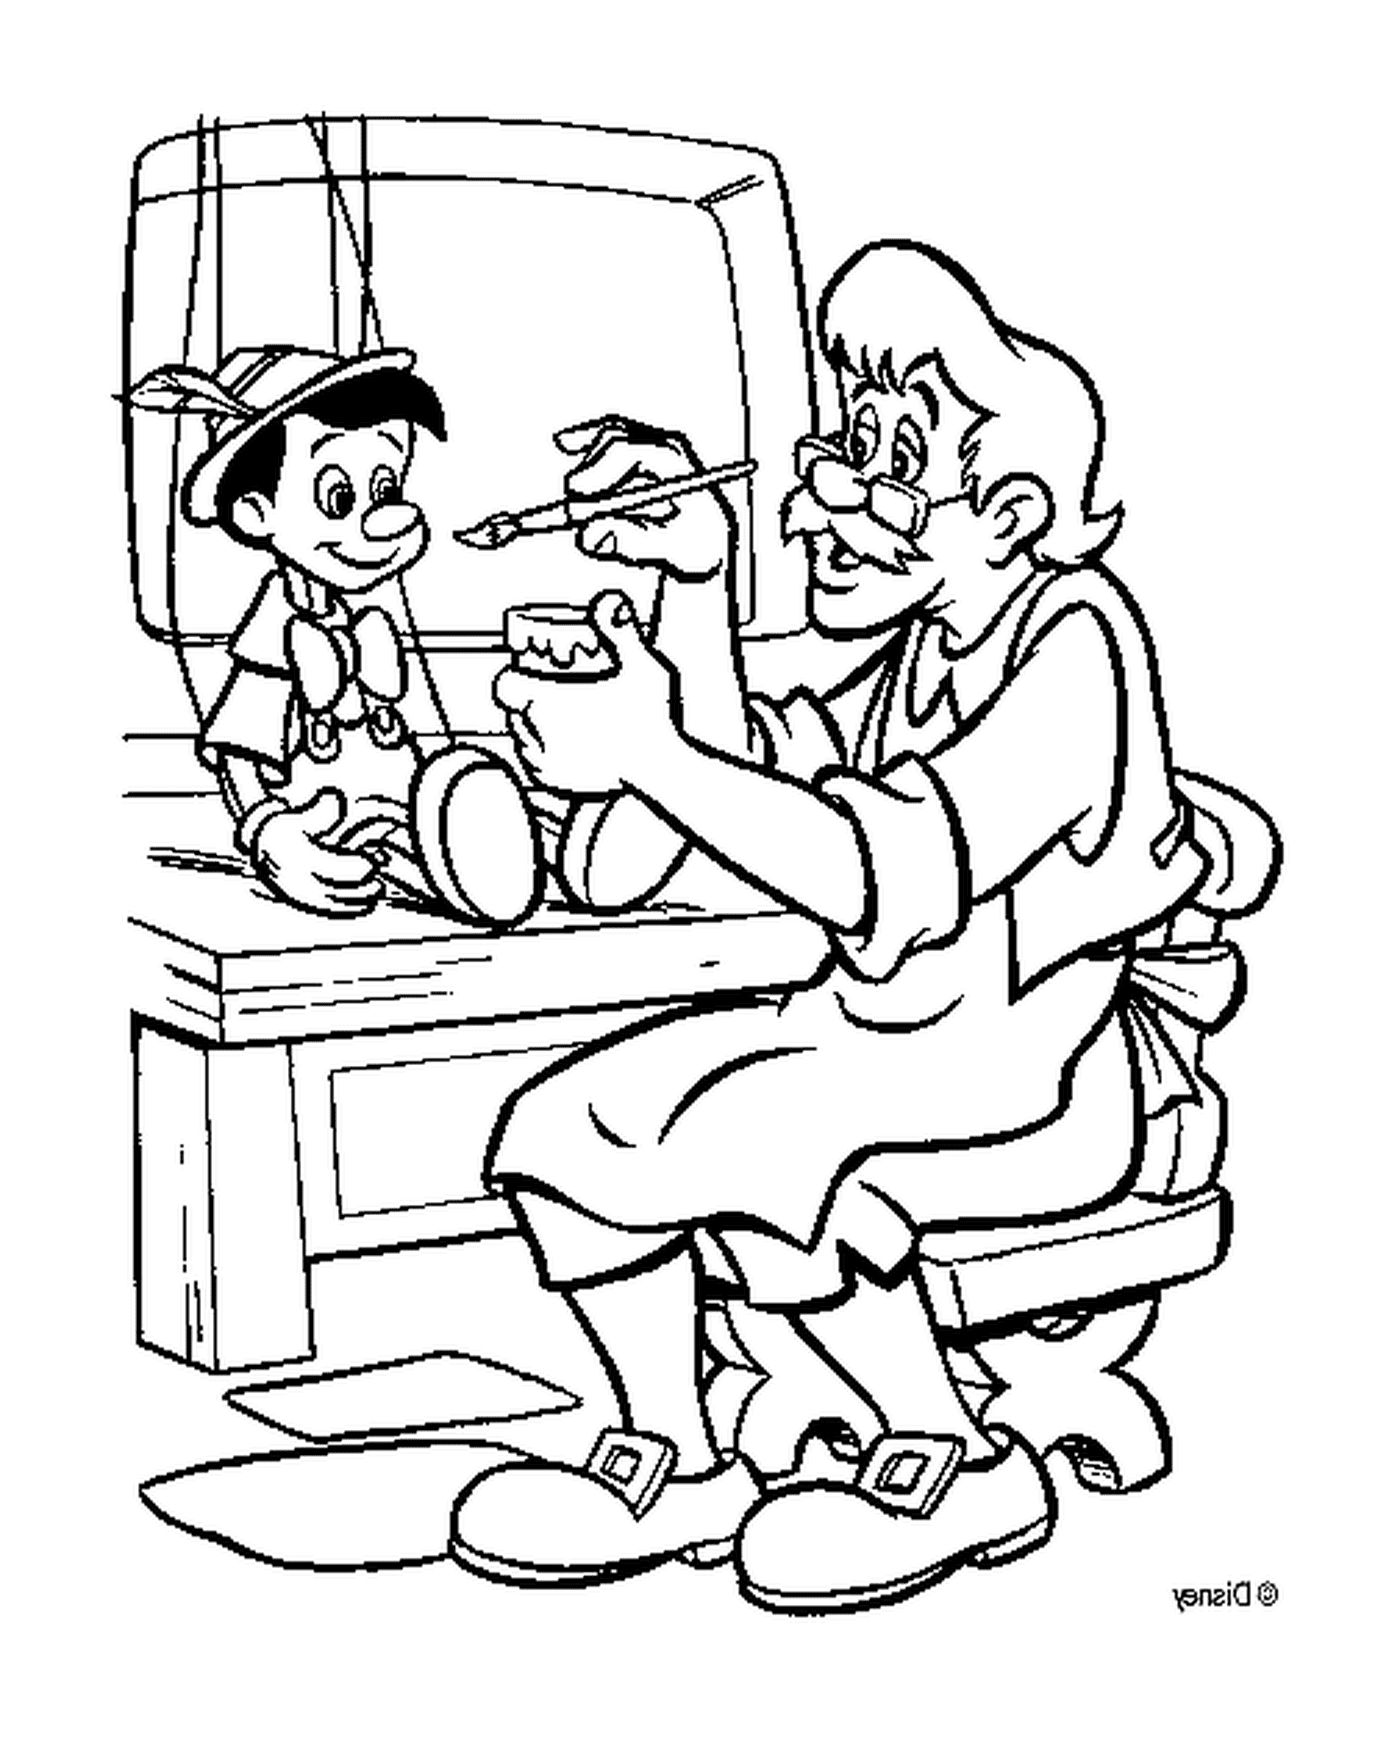  Geppetto fabrica Pinocho en su taller 